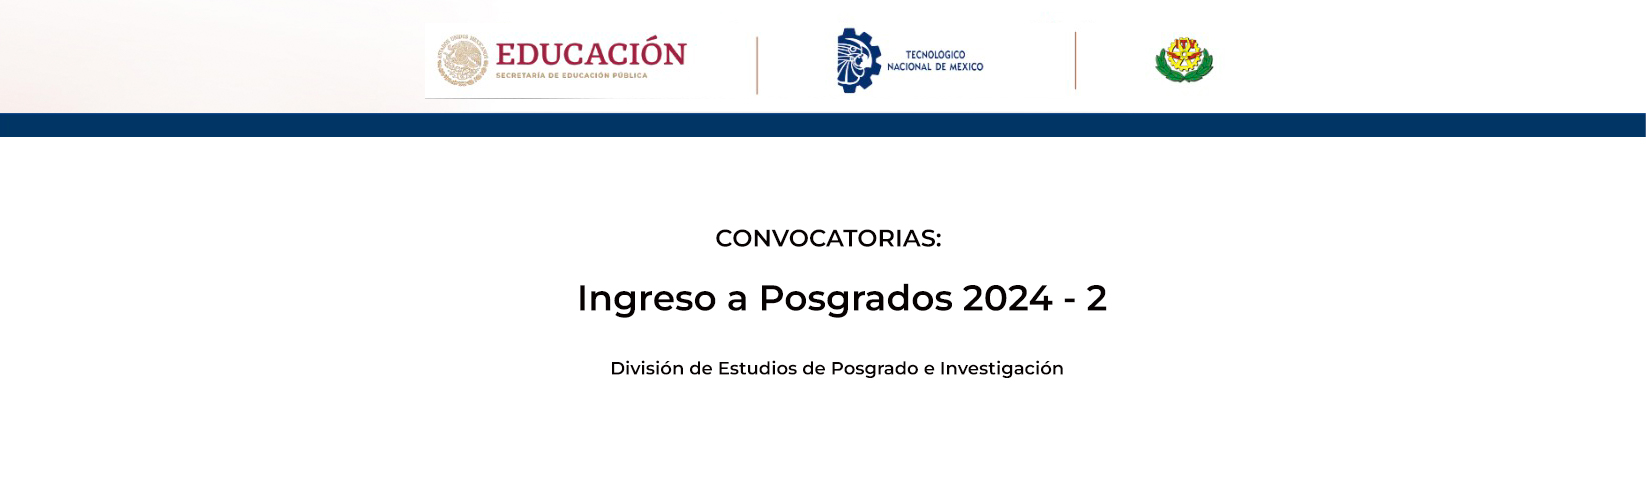 Convocatorias de Ingresos a Posgrados 2024-2